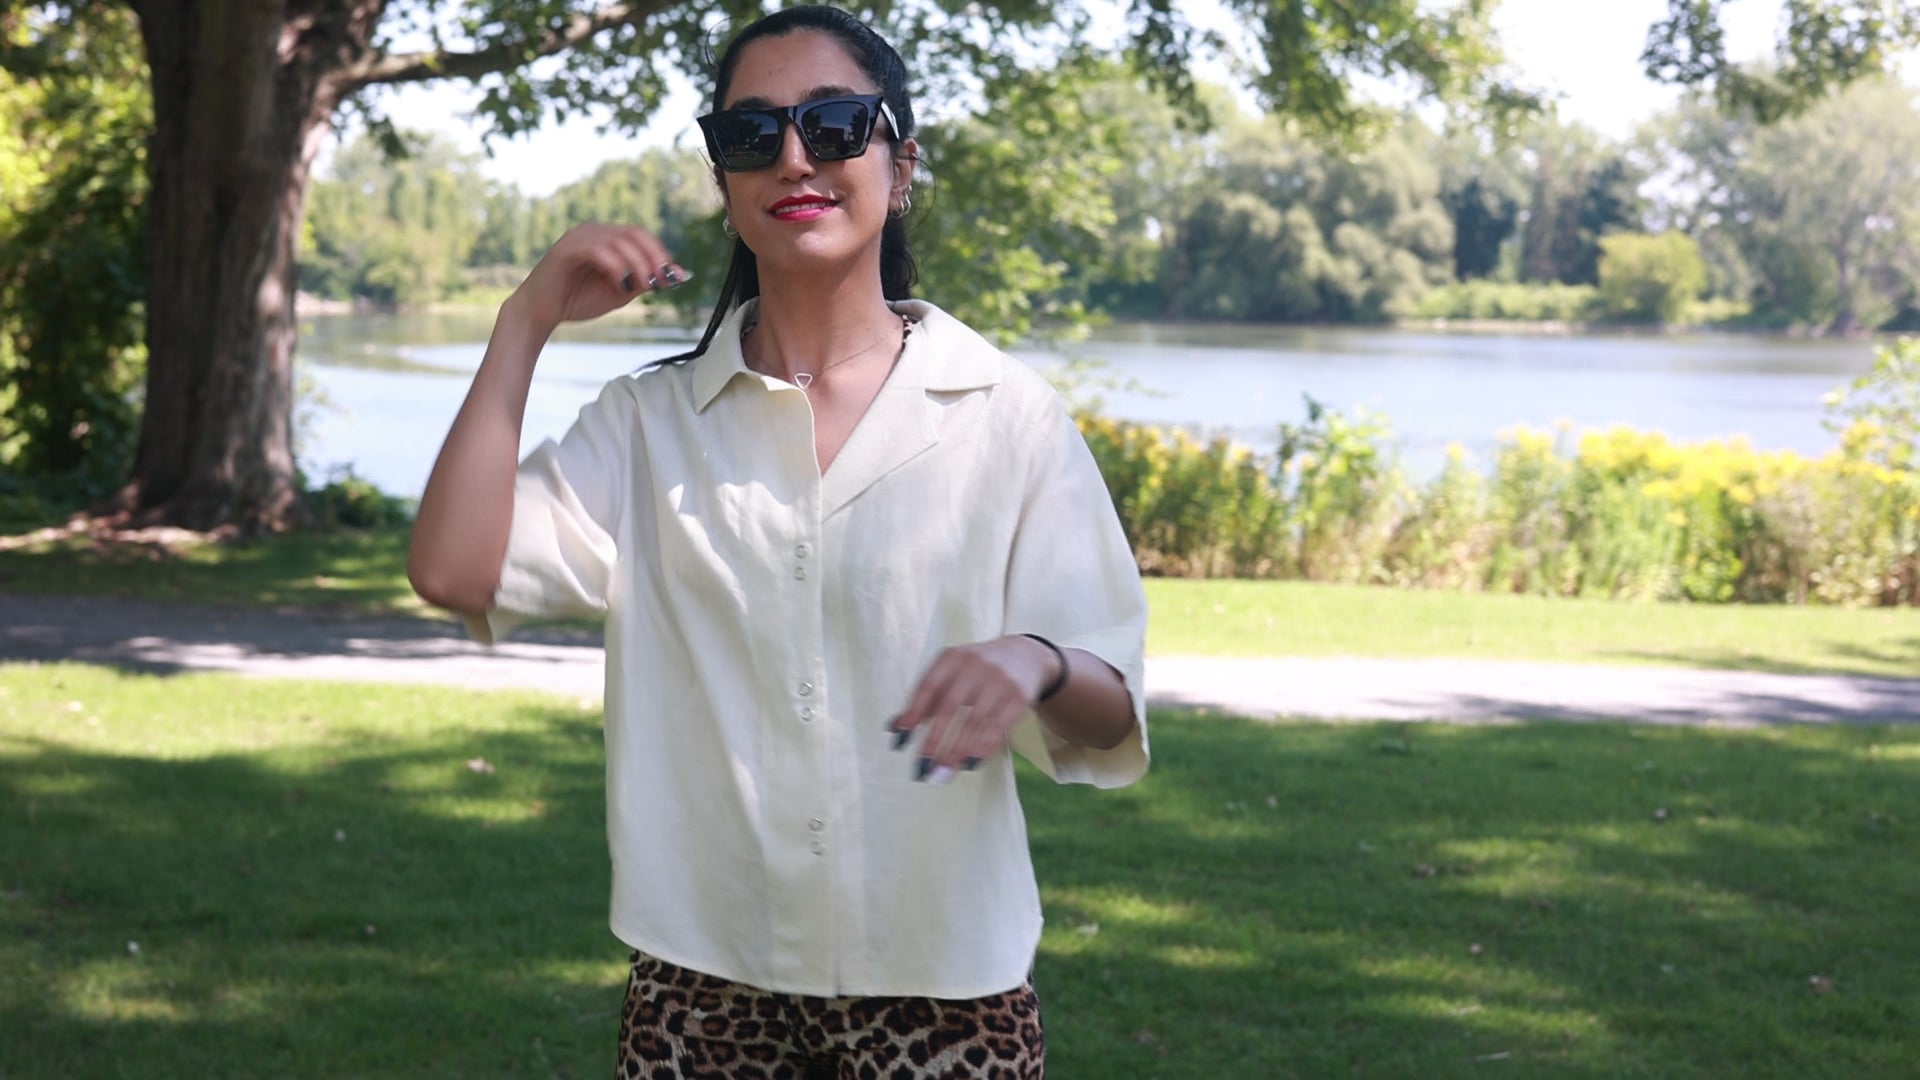 Load video: Vidéo de Sanaz Firouzi portant une chemise en lin couleur latté confectionné par ELZI.ca